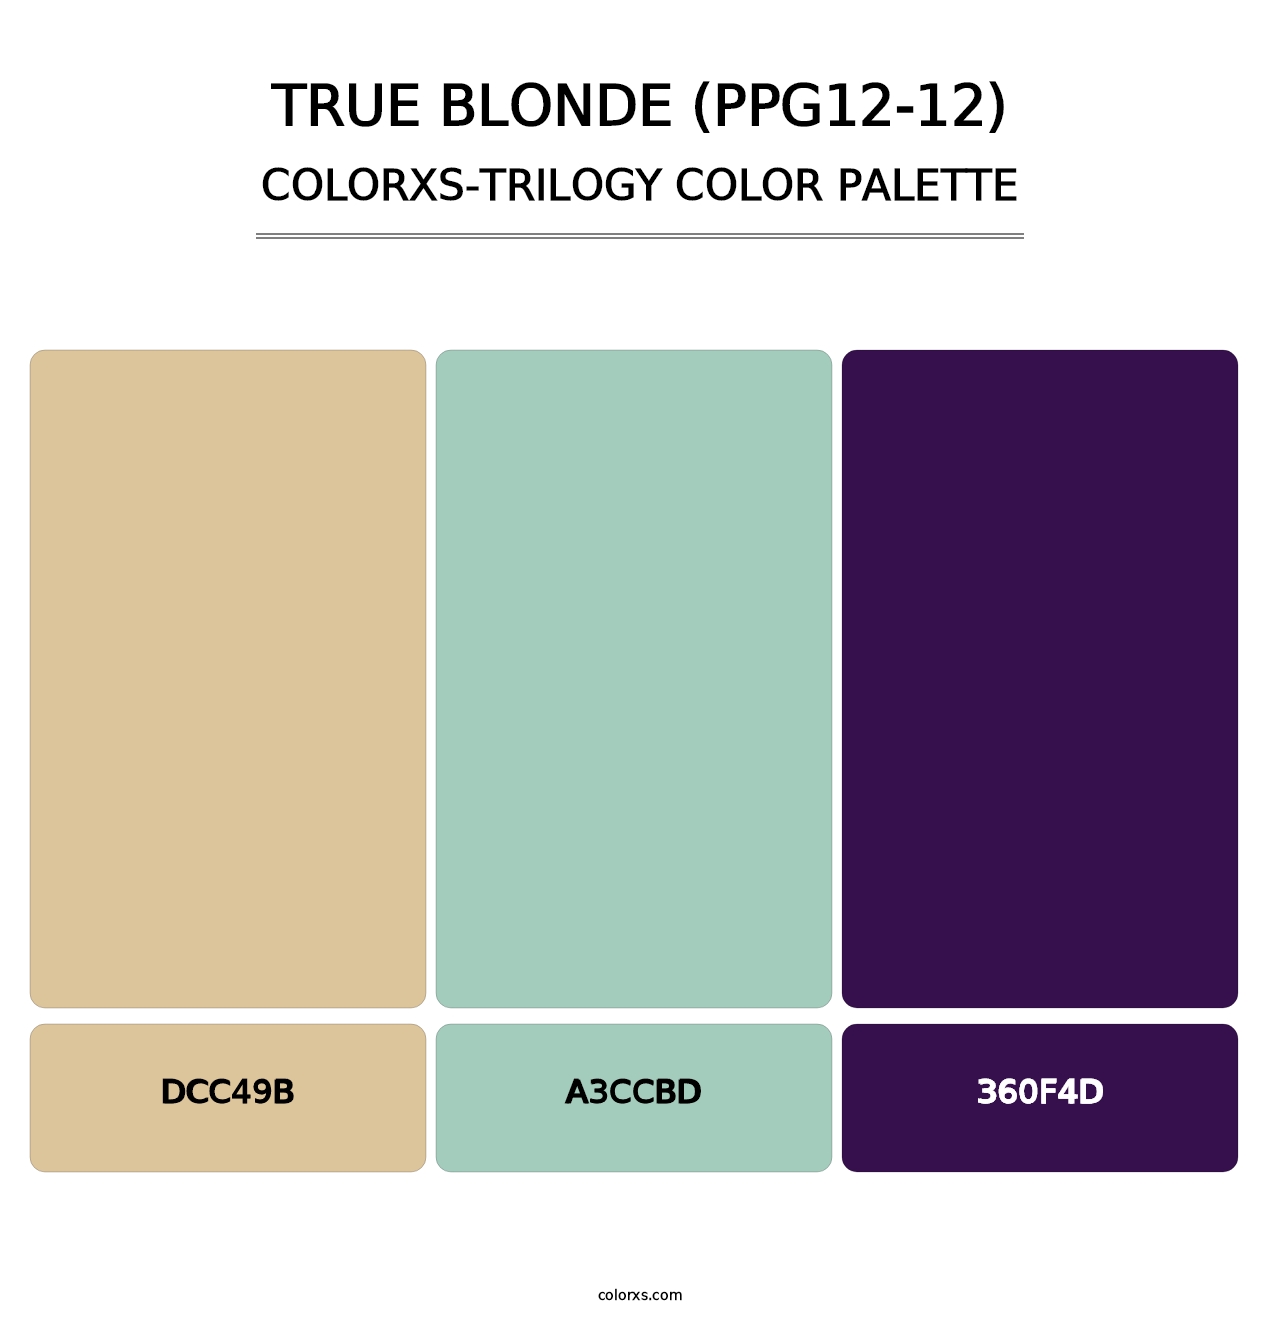 True Blonde (PPG12-12) - Colorxs Trilogy Palette